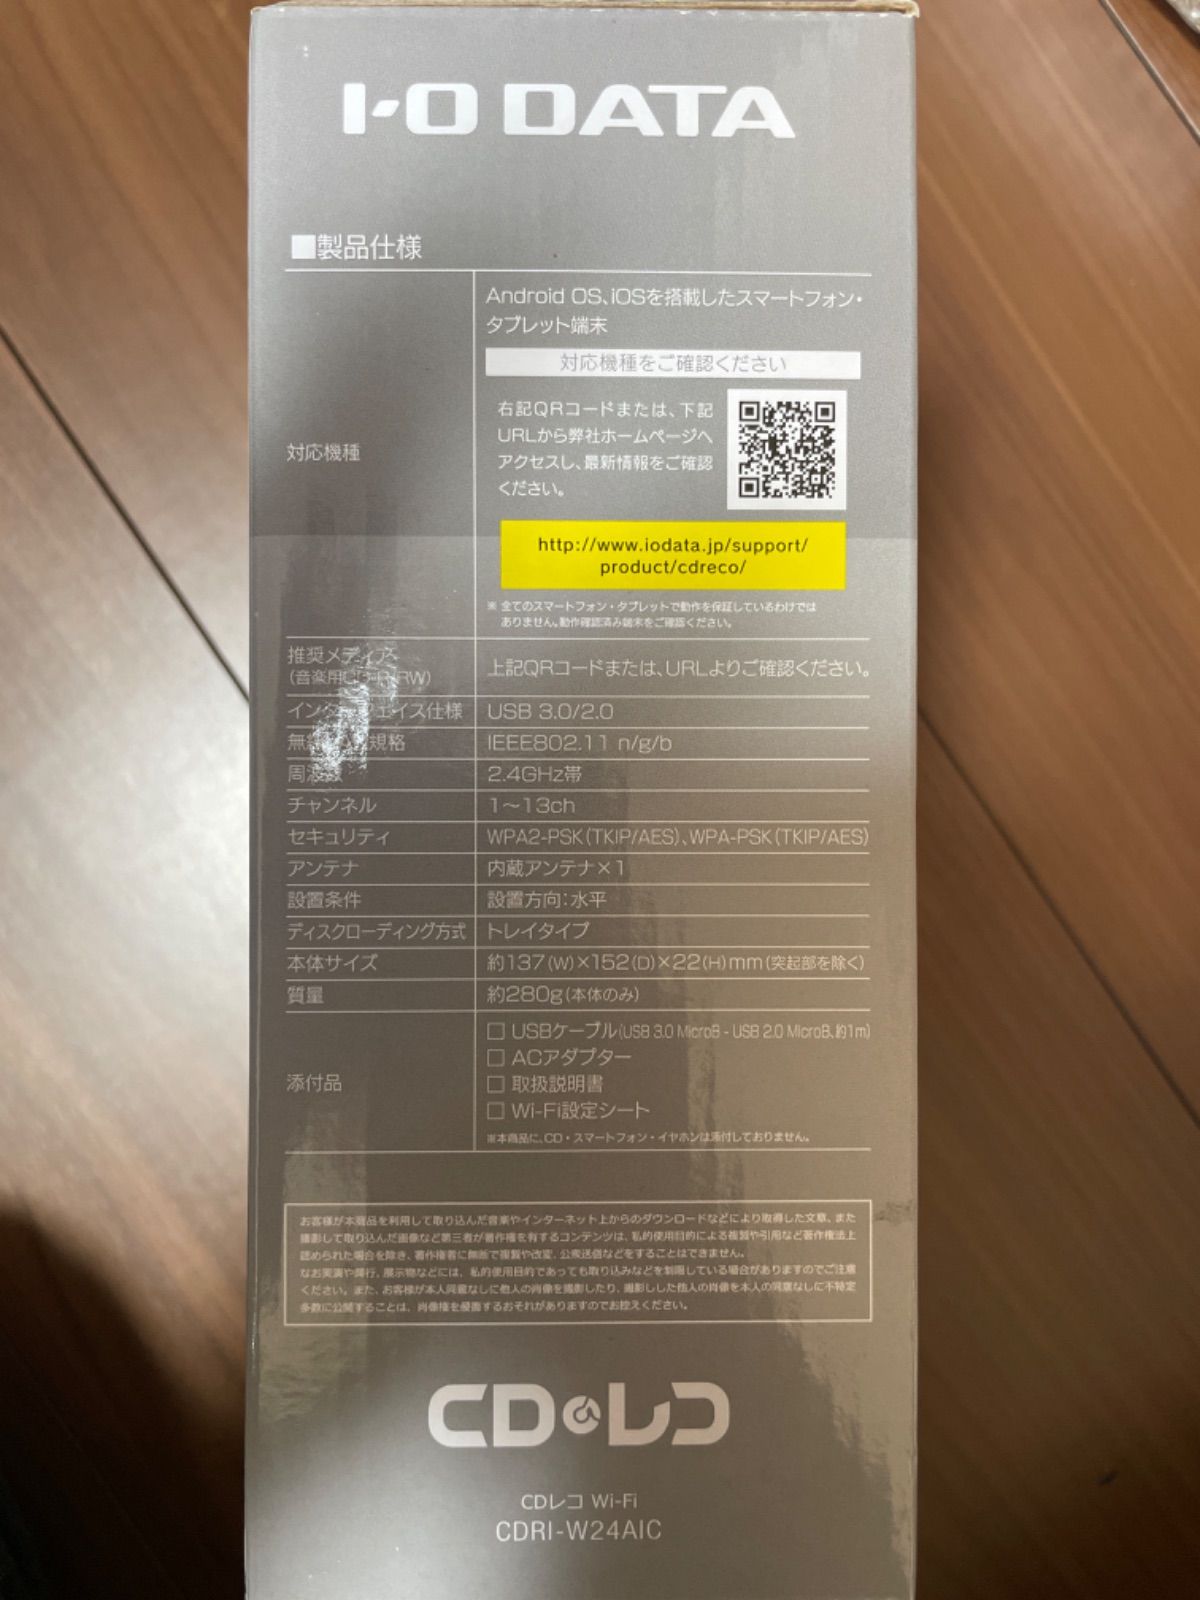 I-O DATA CDレコ Wi-Fi CDRI-W24AIC 【新品未開封】